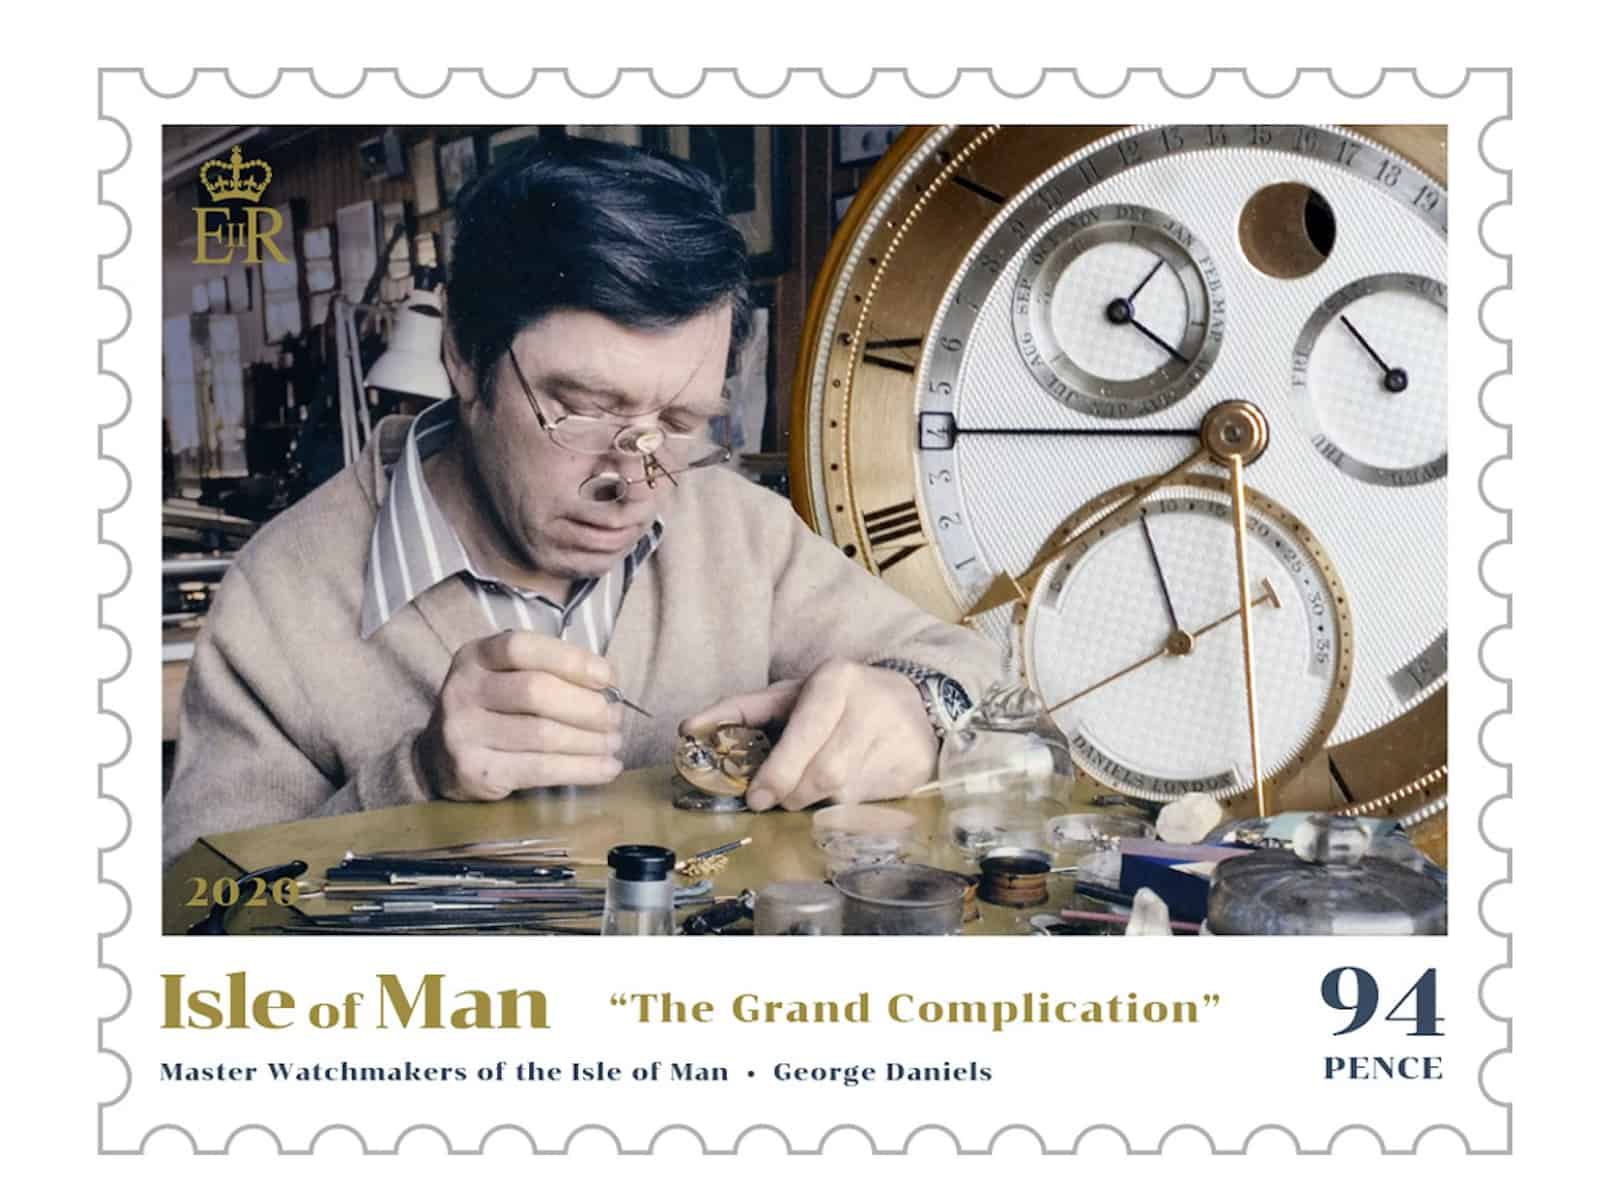 Isle of Man Briefmarke zu Ehren von George Daniels und der Grand Complication Taschenuhr